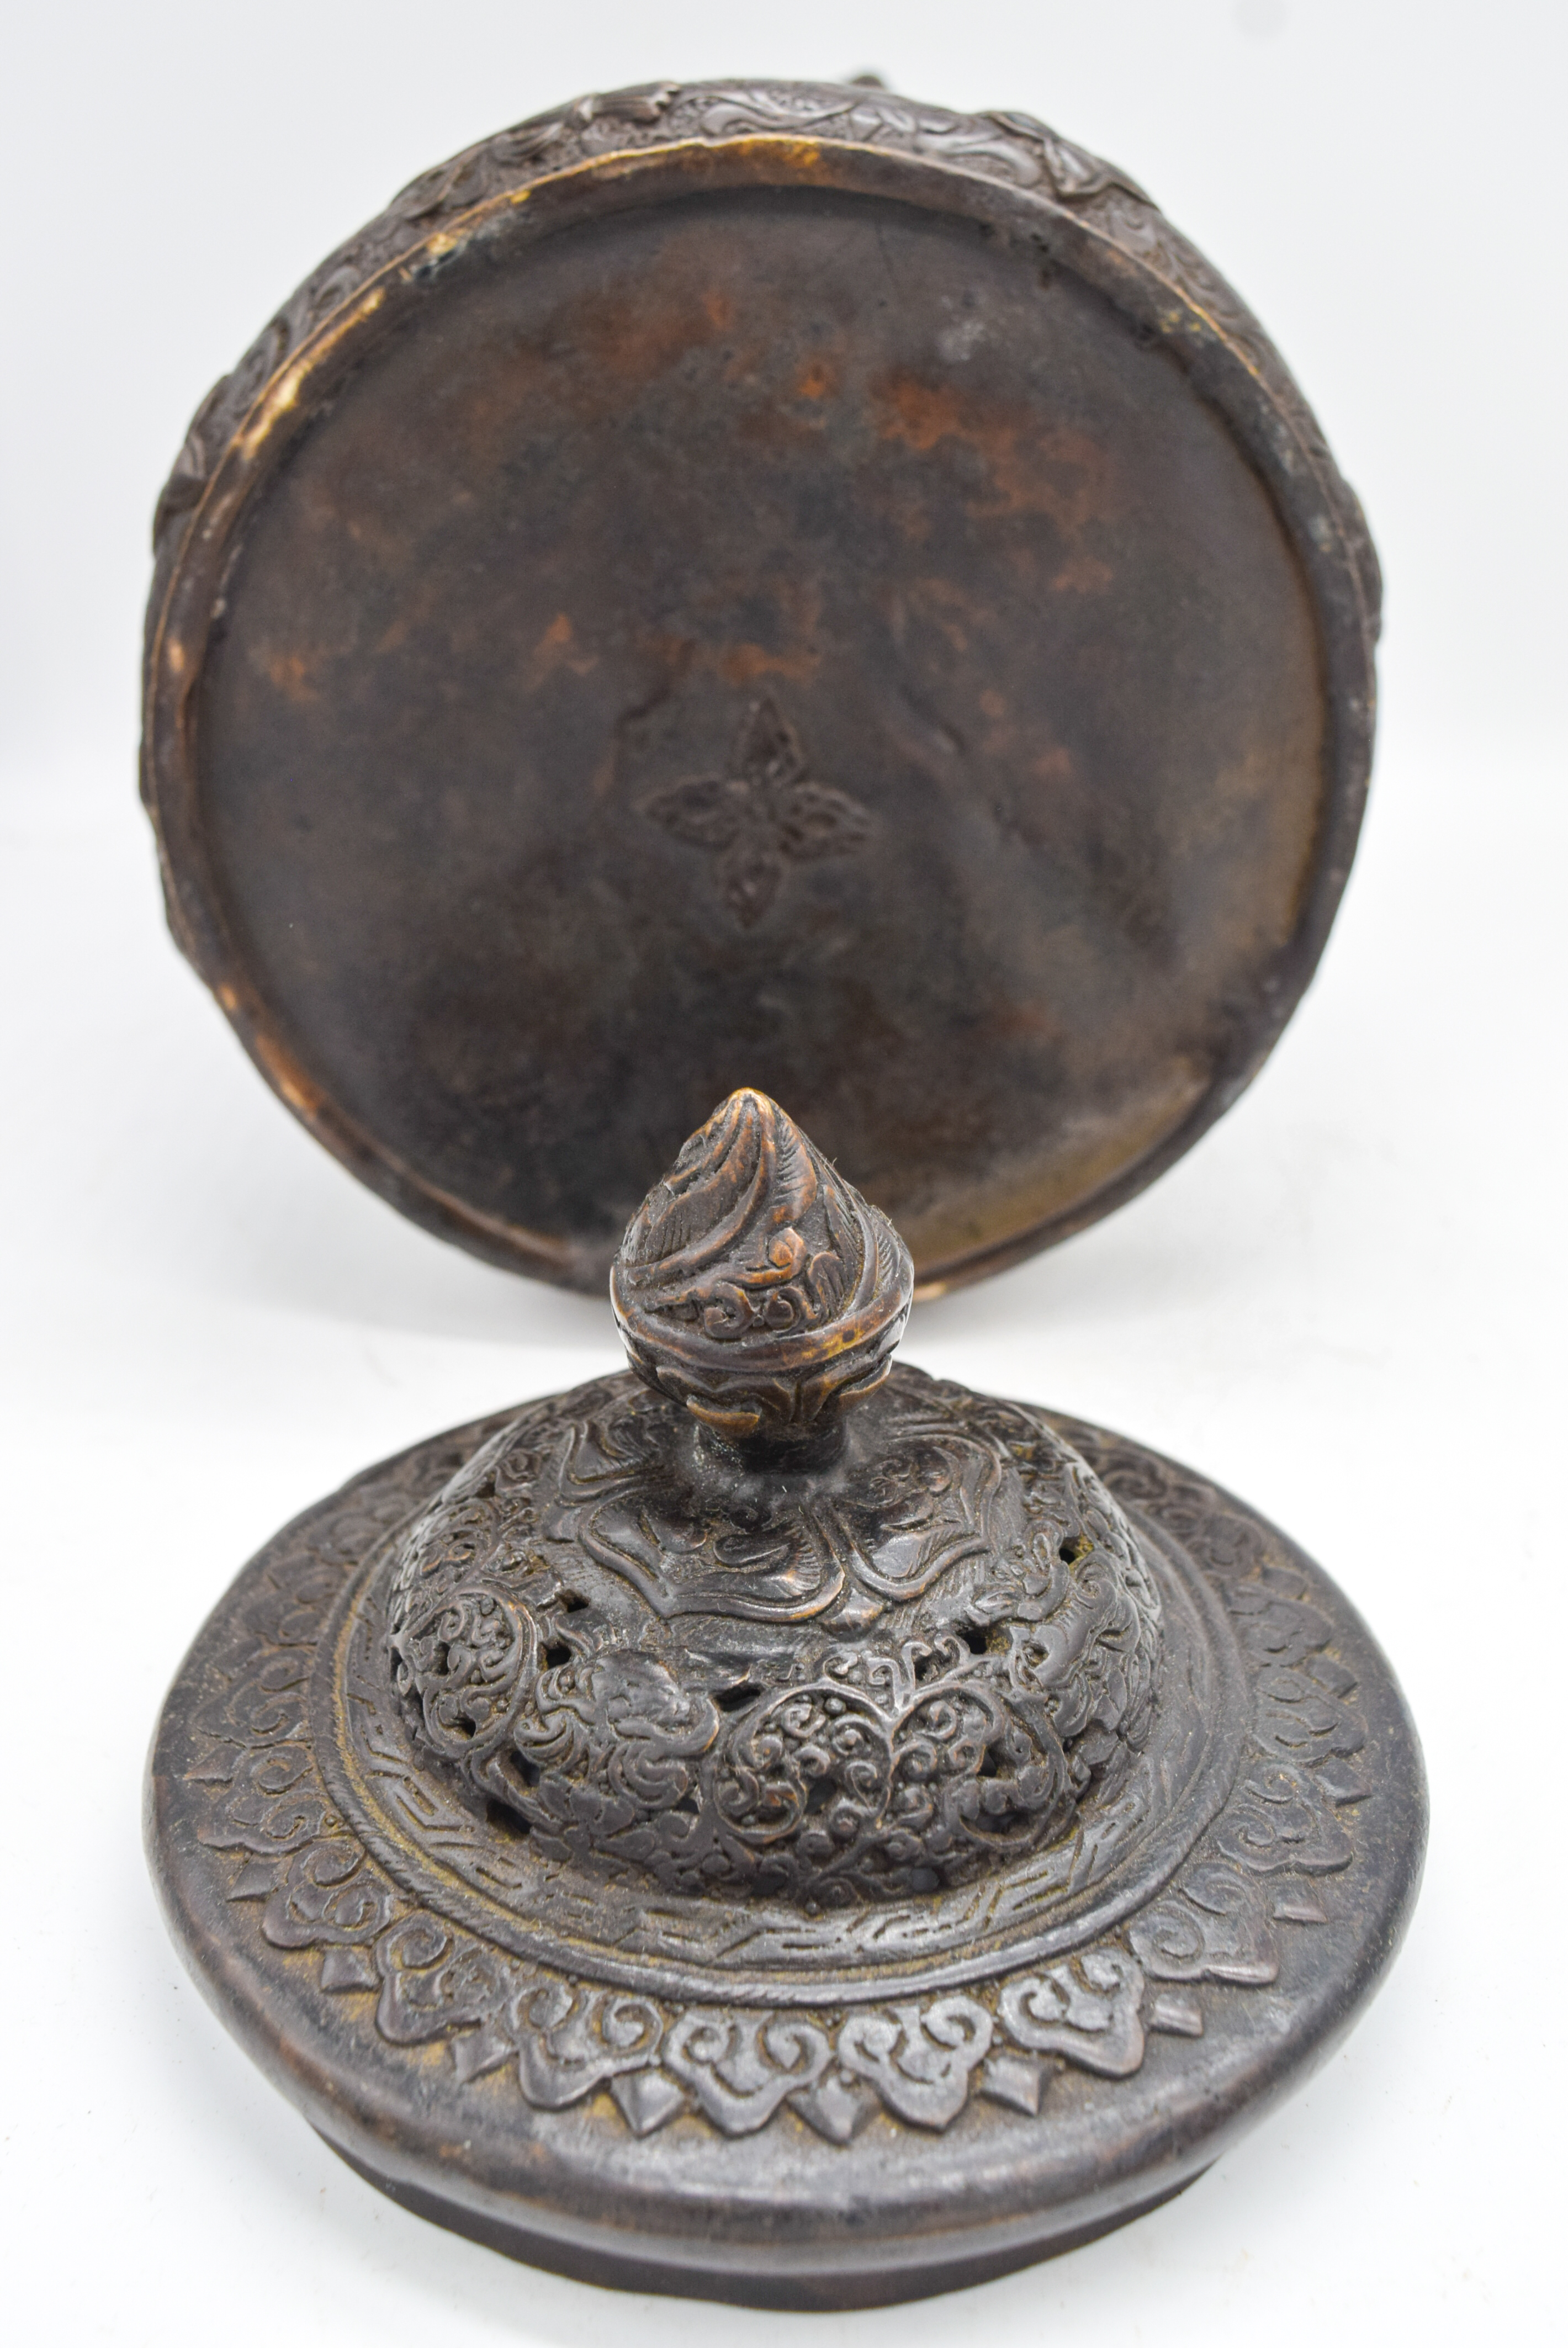 A Tibetan bronze jar with lid 27 x 15 cm - Image 2 of 2